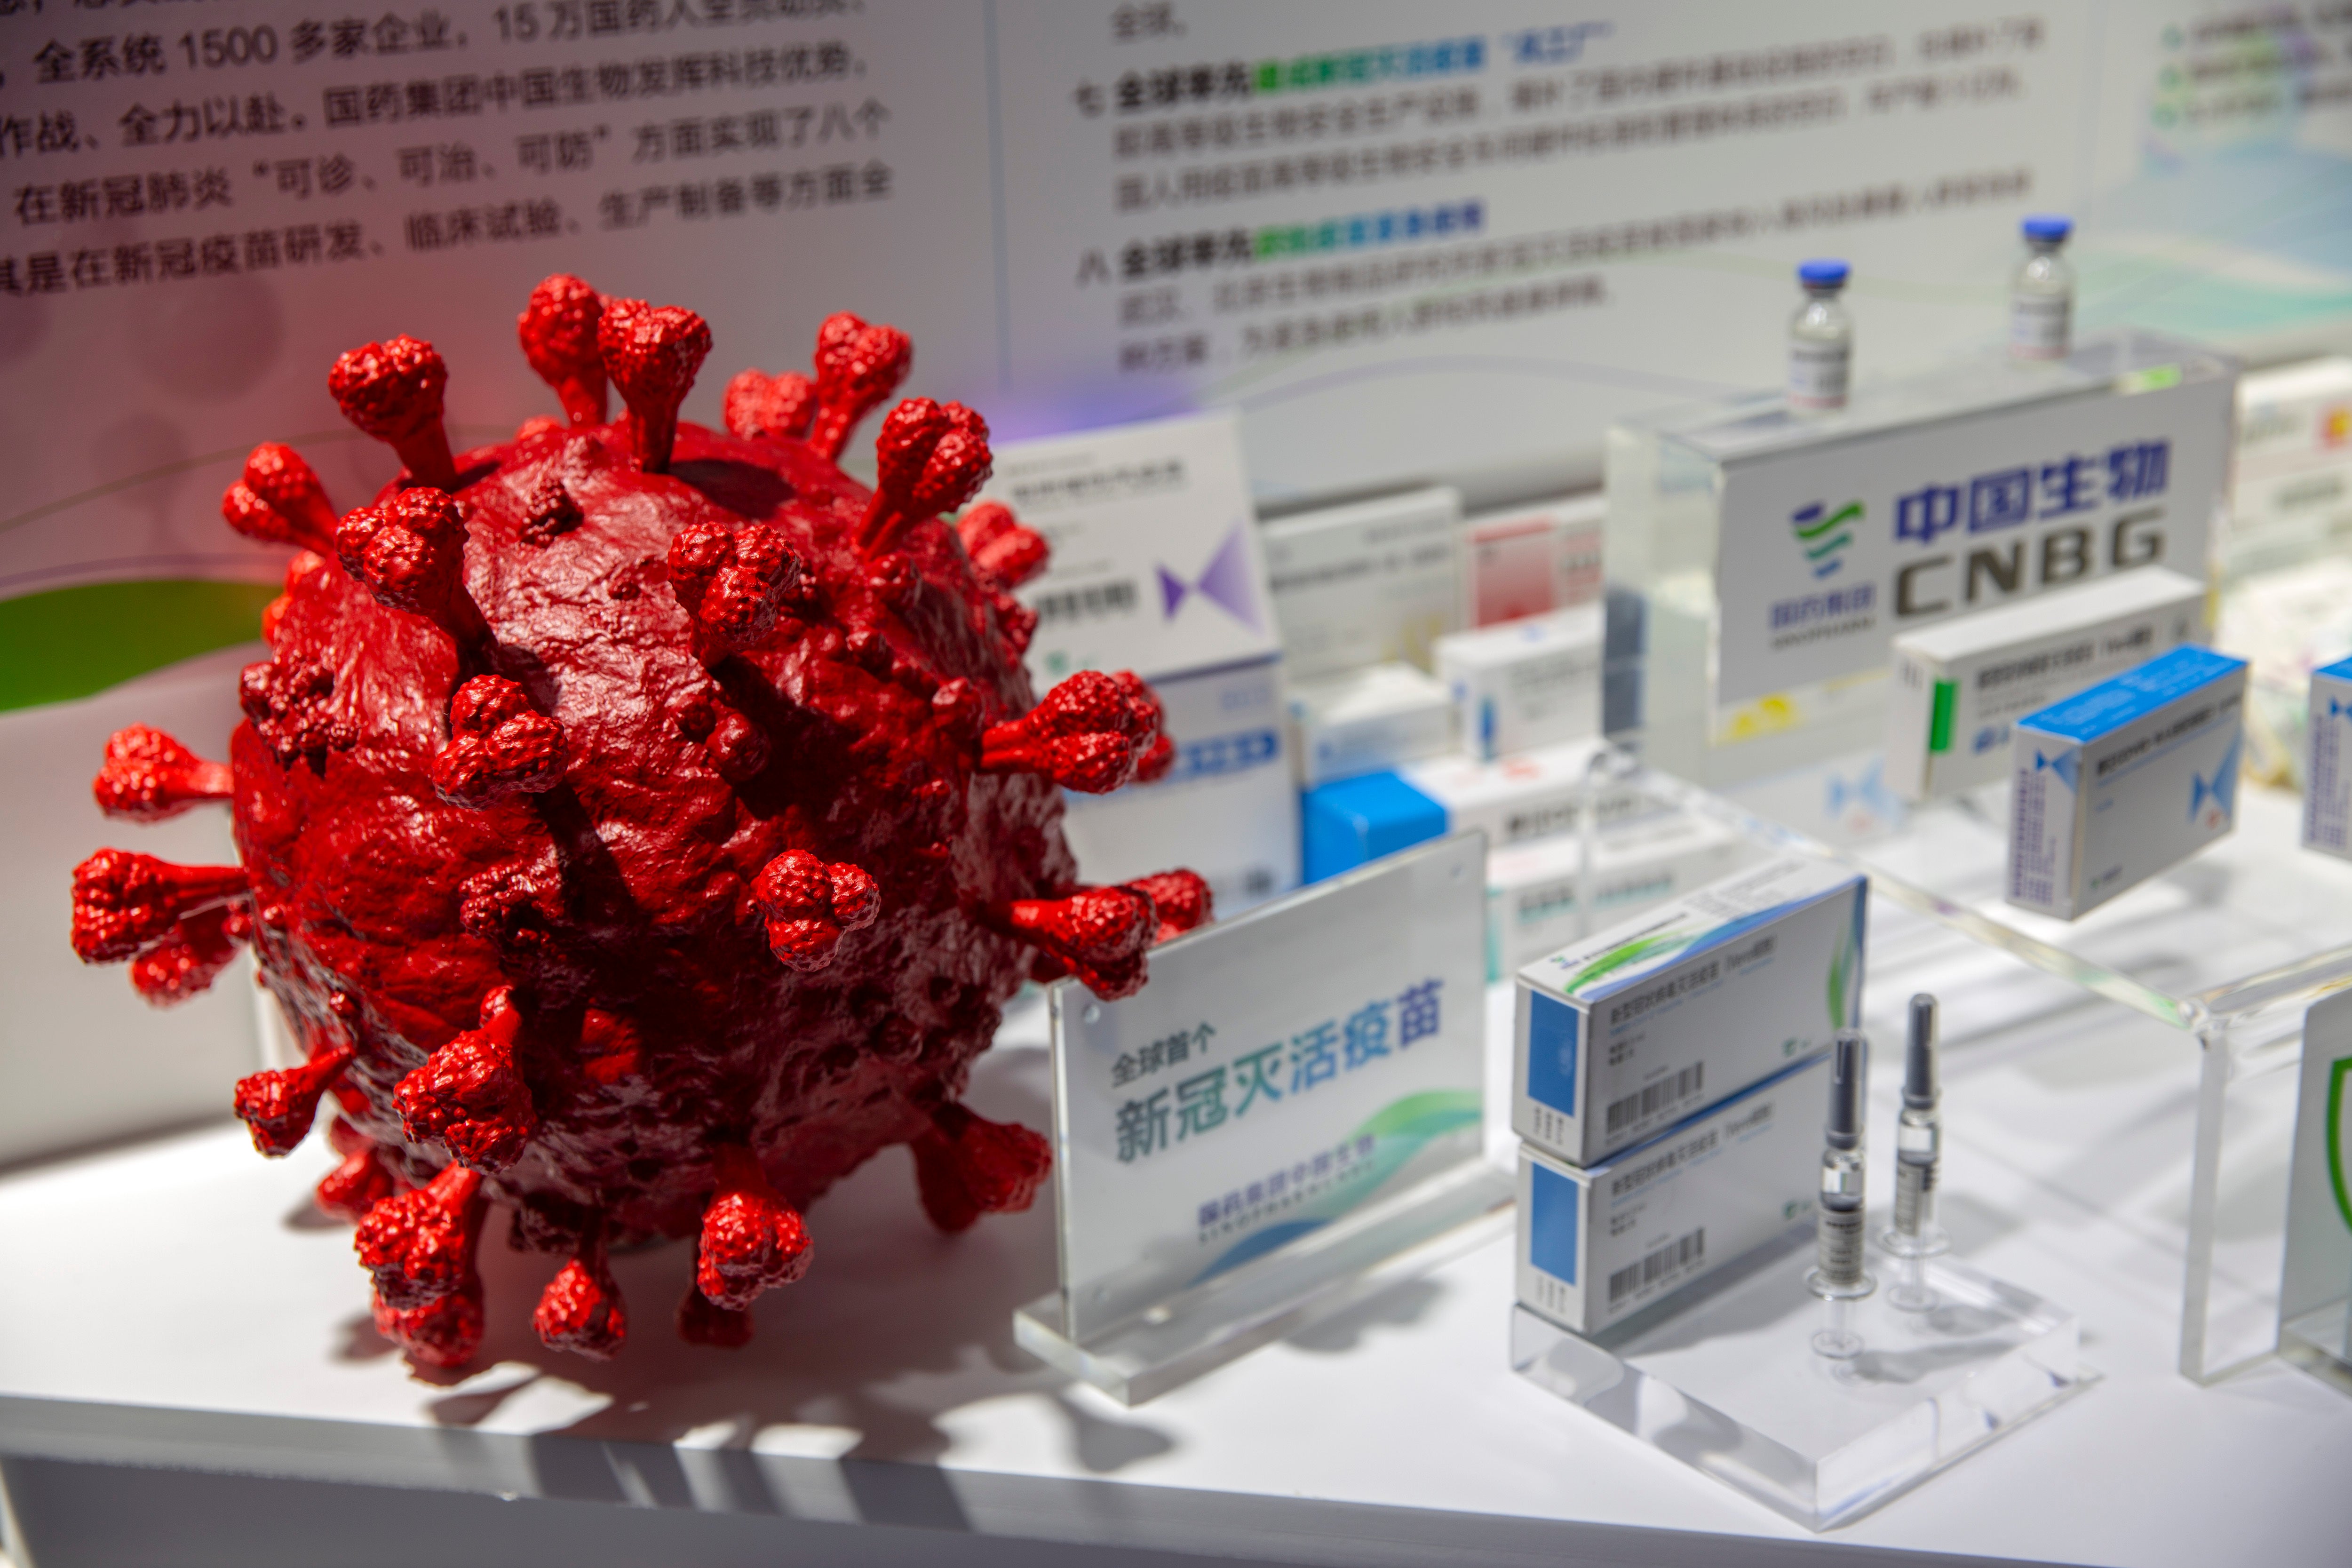 En un principio, funcionarios del país habían rechazado formar parte de los esfuerzos mundiales en el combate contra el coronavirus